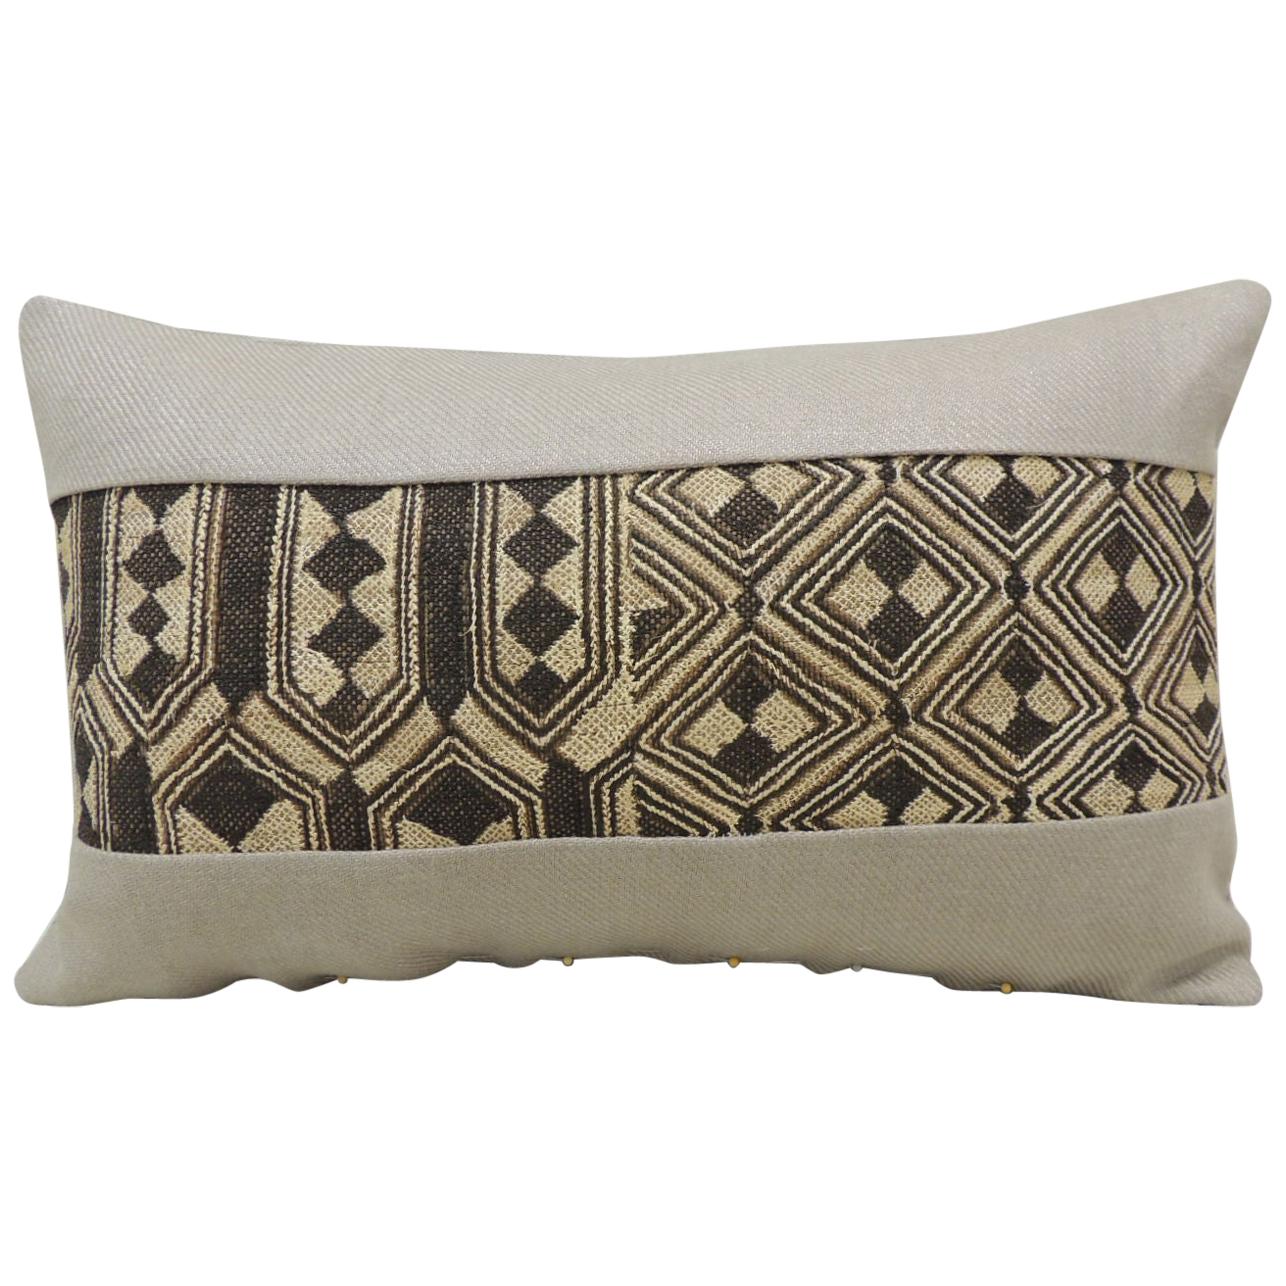 Vintage Tan and Black African Kuba Lumbar Decorative Pillow